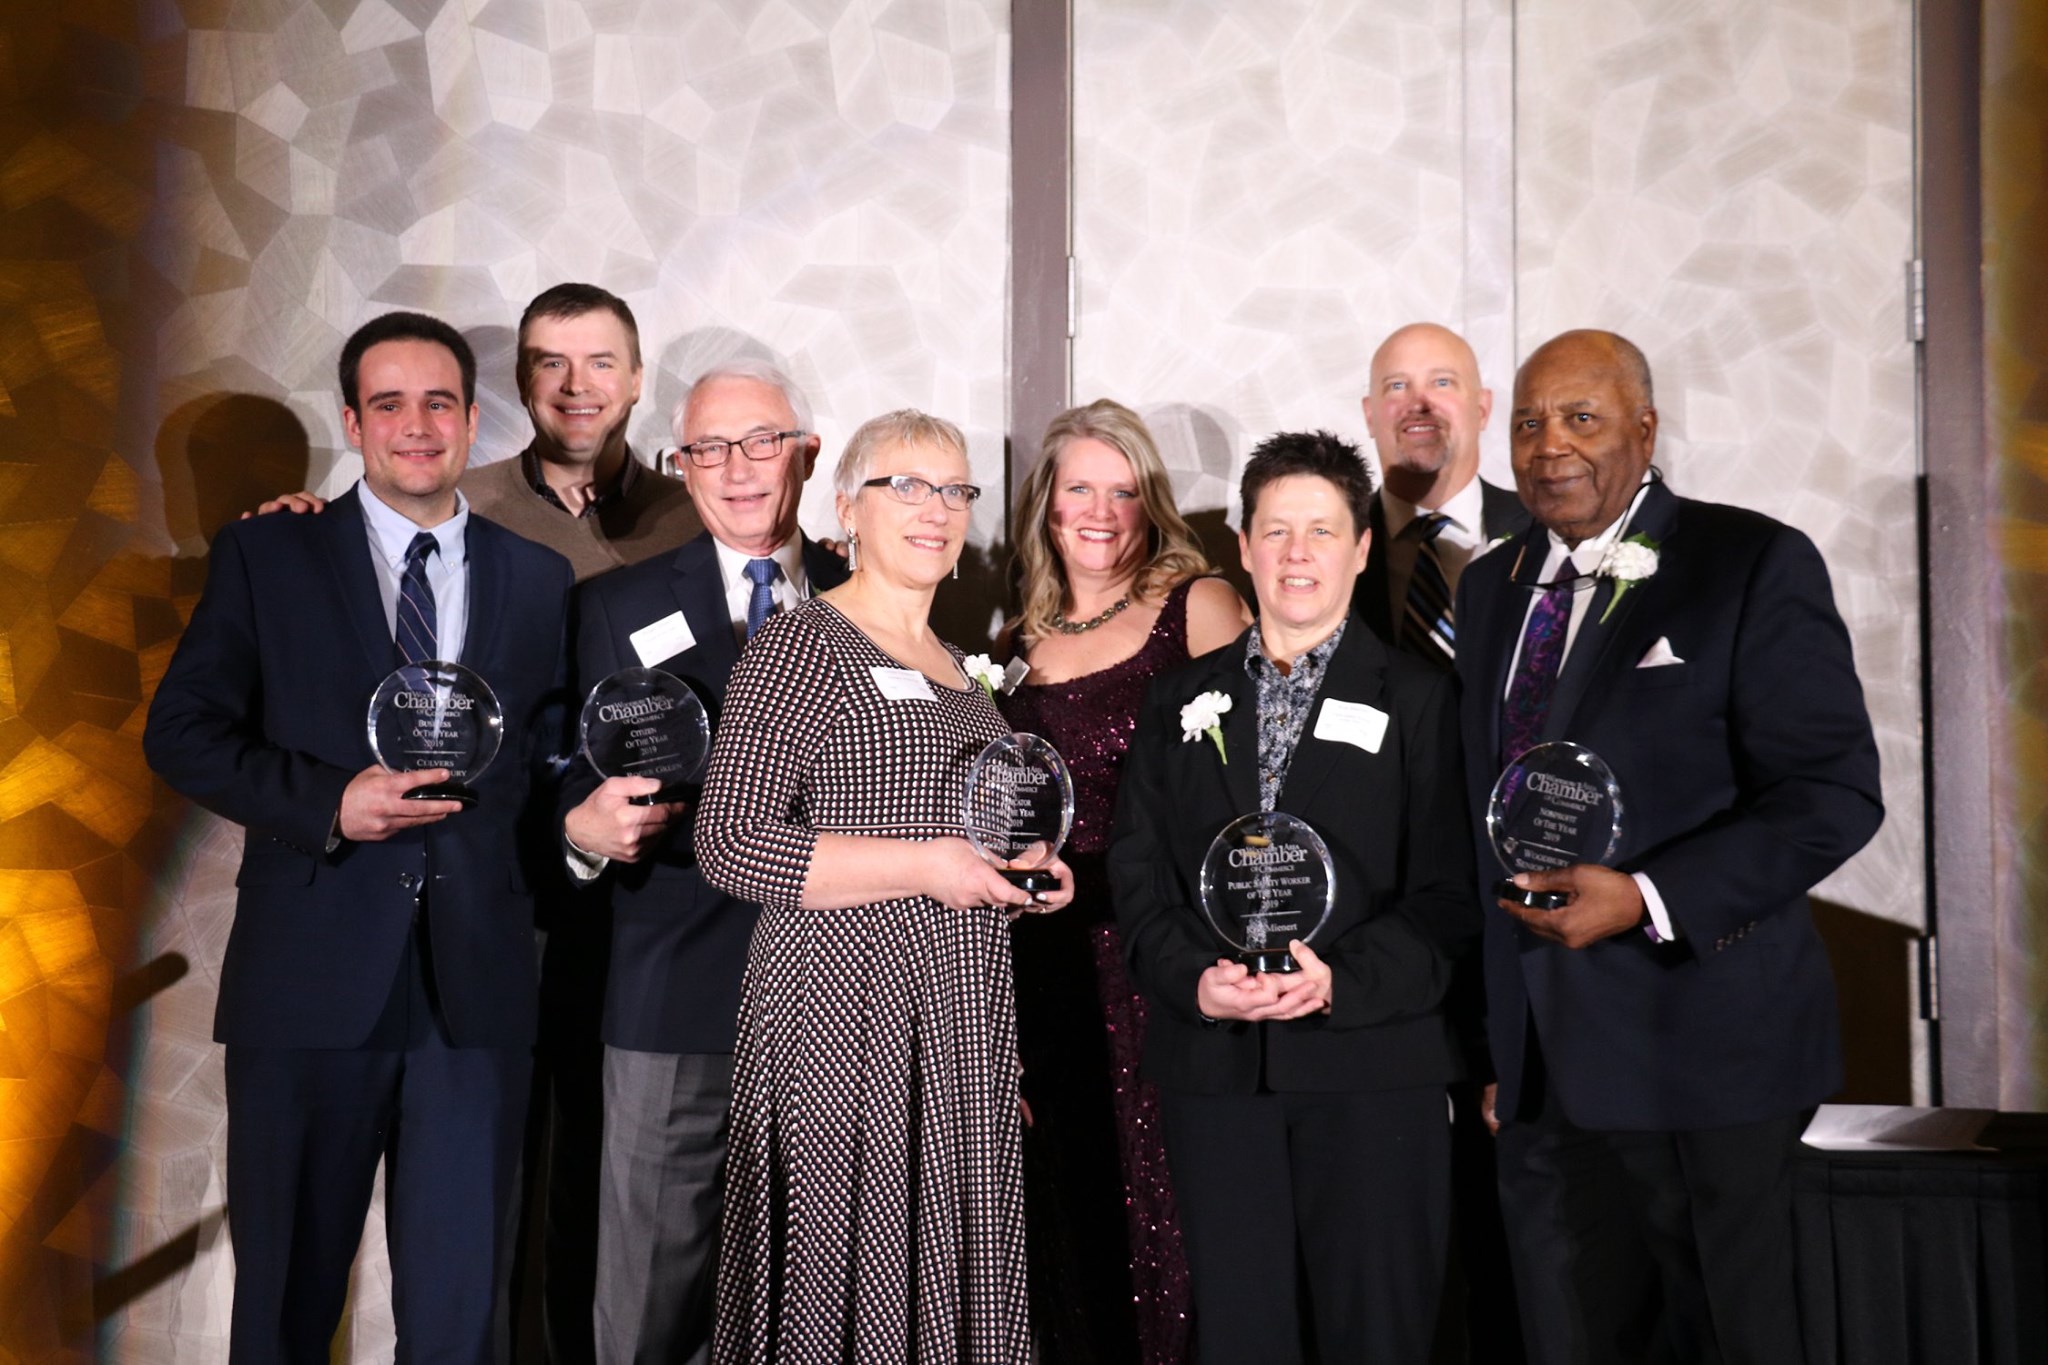 2019 Community Award Recipients